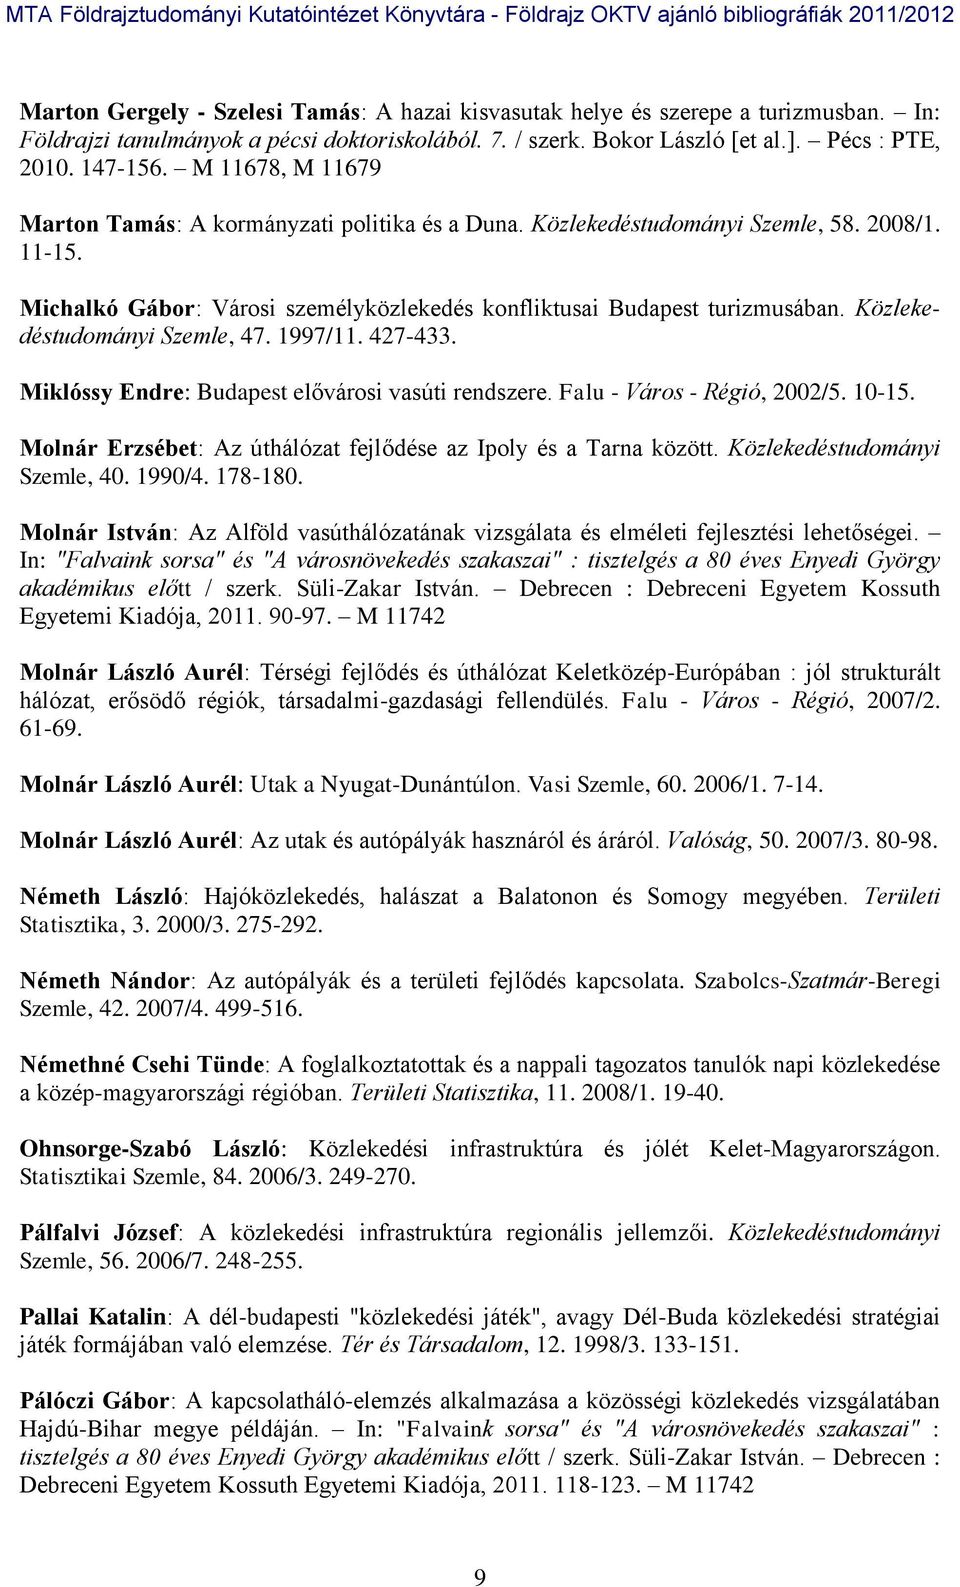 Közlekedéstudományi Szemle, 47. 1997/11. 427-433. Miklóssy Endre: Budapest elővárosi vasúti rendszere. Falu - Város - Régió, 2002/5. 10-15.